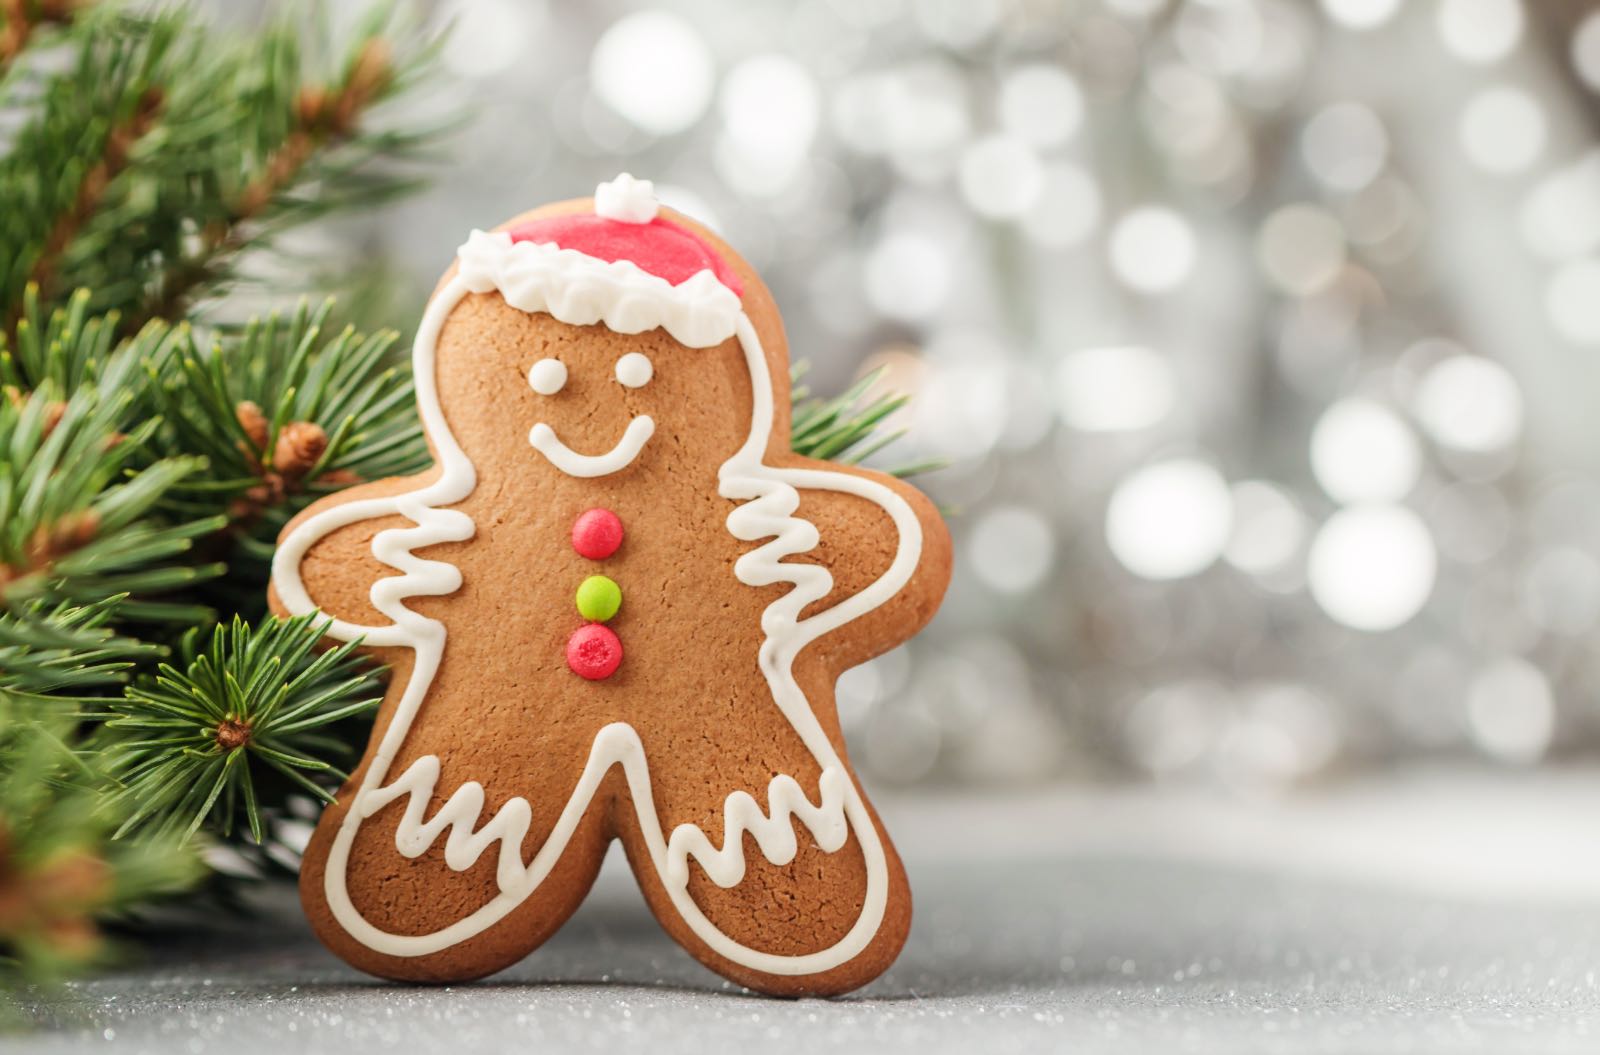 bánh quy, bánh quy gừng, gingerbread, mùa giáng sinh, mùa lễ hội